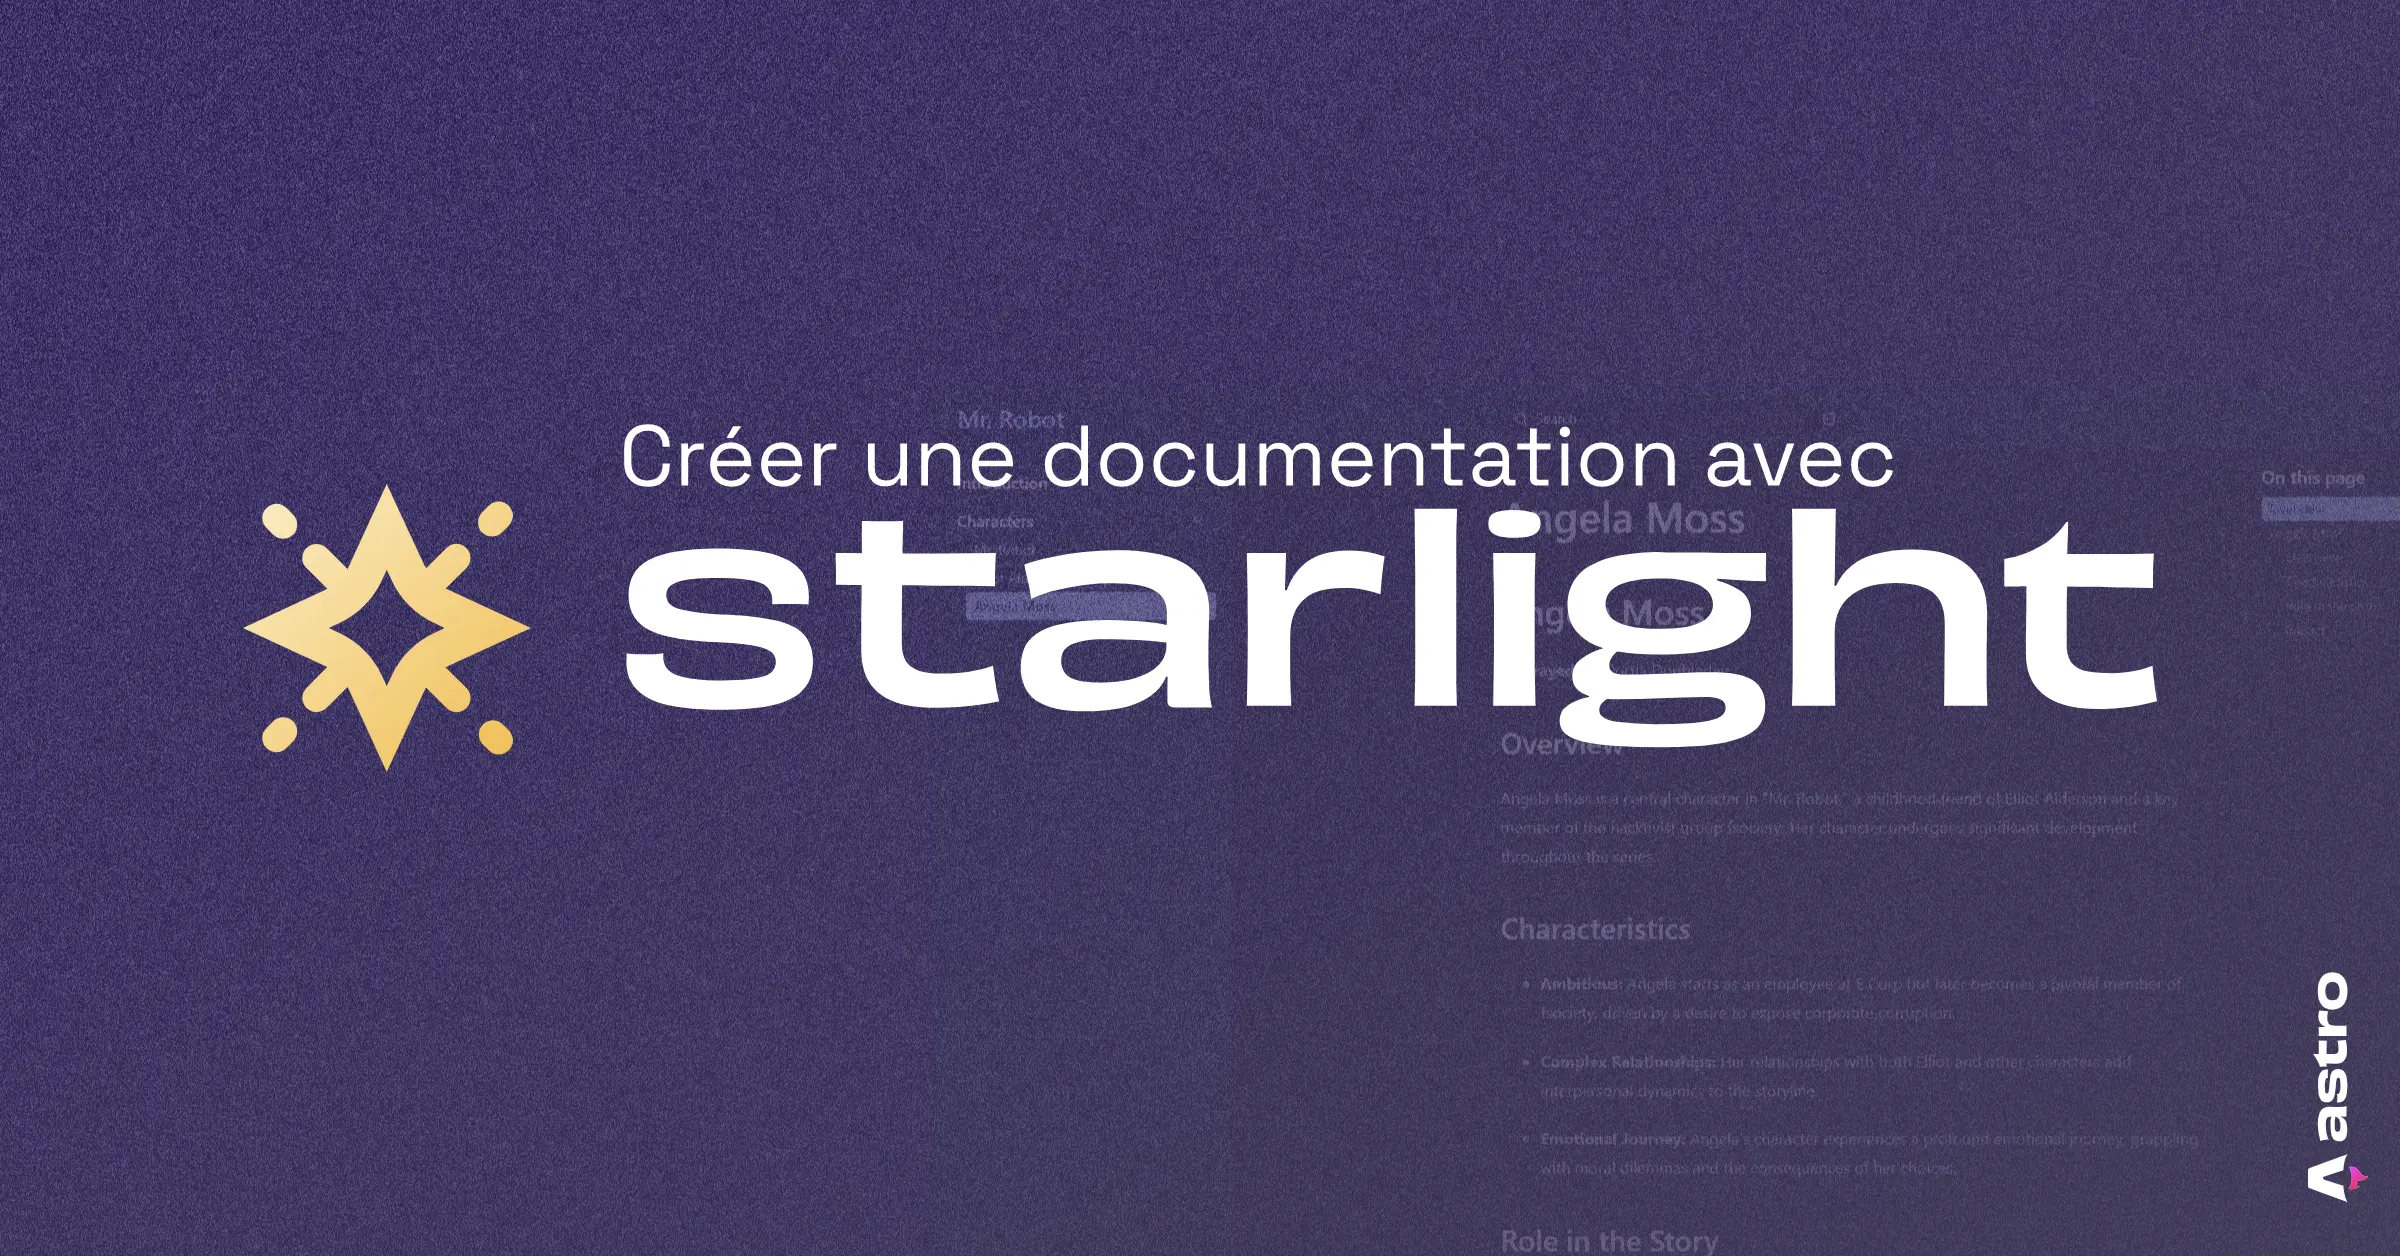 Une bannière avec le logo Astro et Starlight, et le titre de l'article "Créer une documentation avec Starlight"